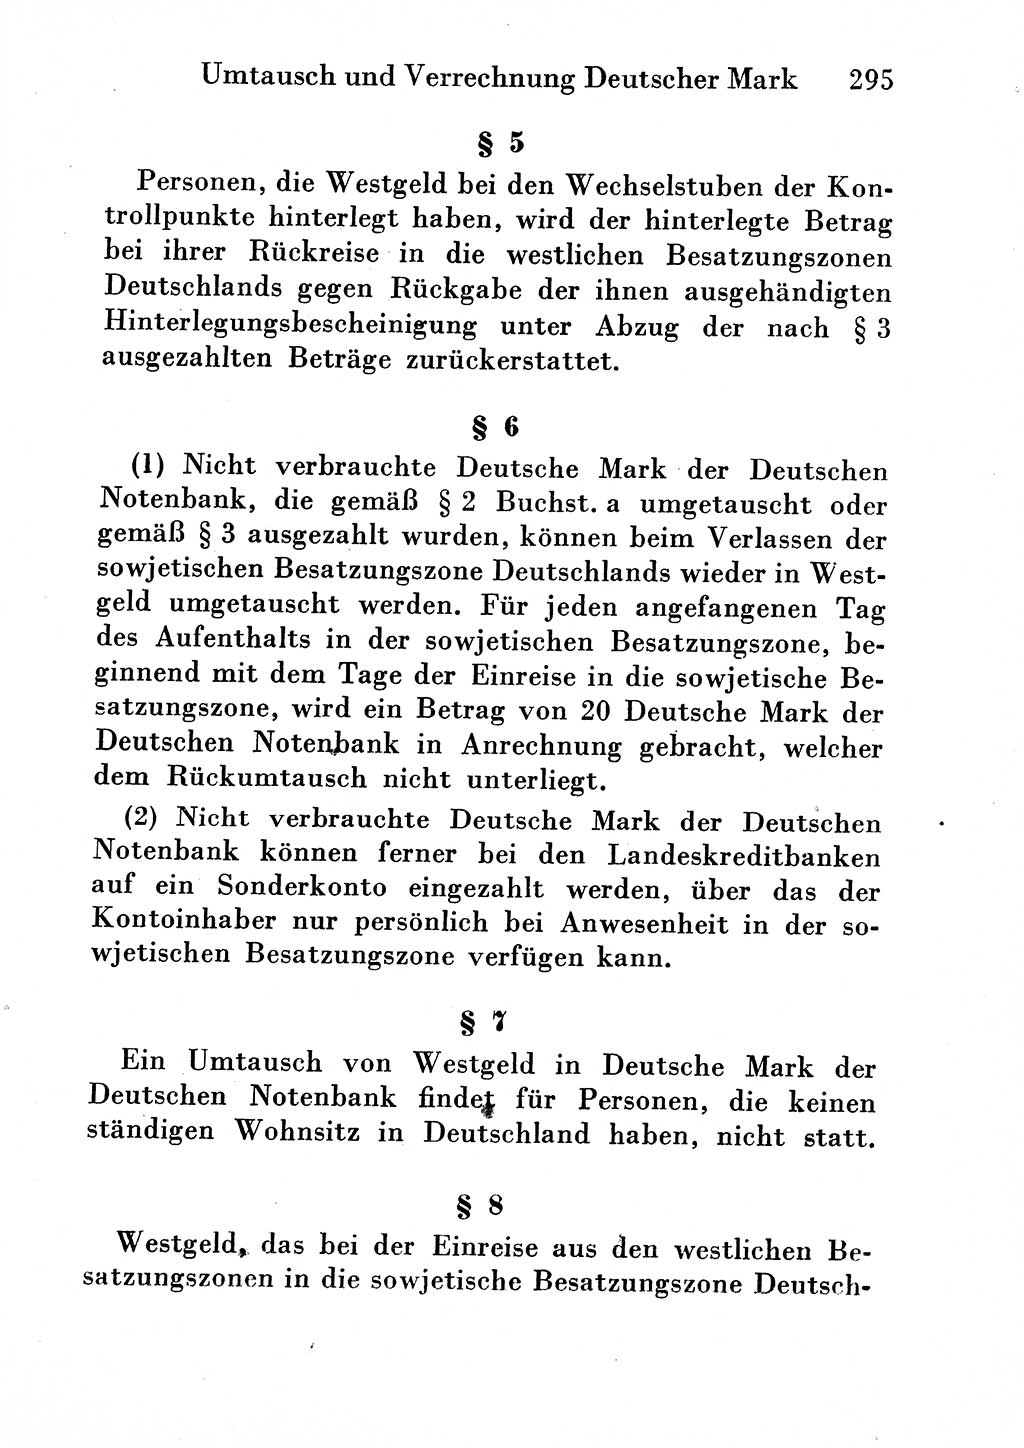 Strafgesetzbuch (StGB) und andere Strafgesetze [Deutsche Demokratische Republik (DDR)] 1954, Seite 295 (StGB Strafges. DDR 1954, S. 295)